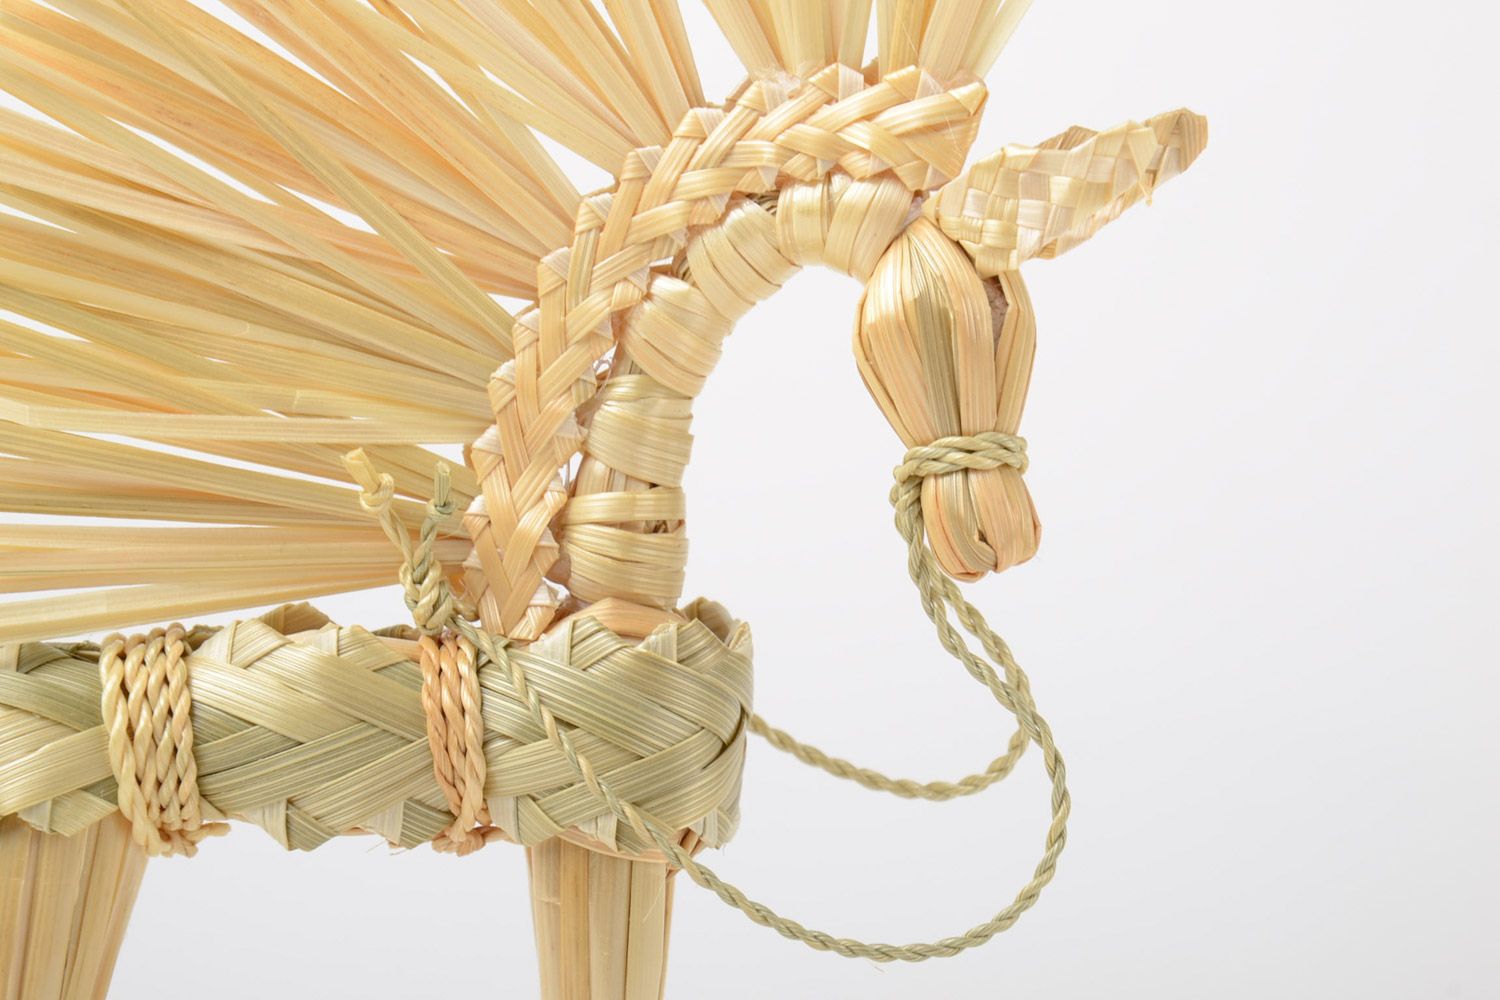 Handmade Spielzeug aus Stroh in Form von geflochtenem Pferd slawisch klein schön foto 4